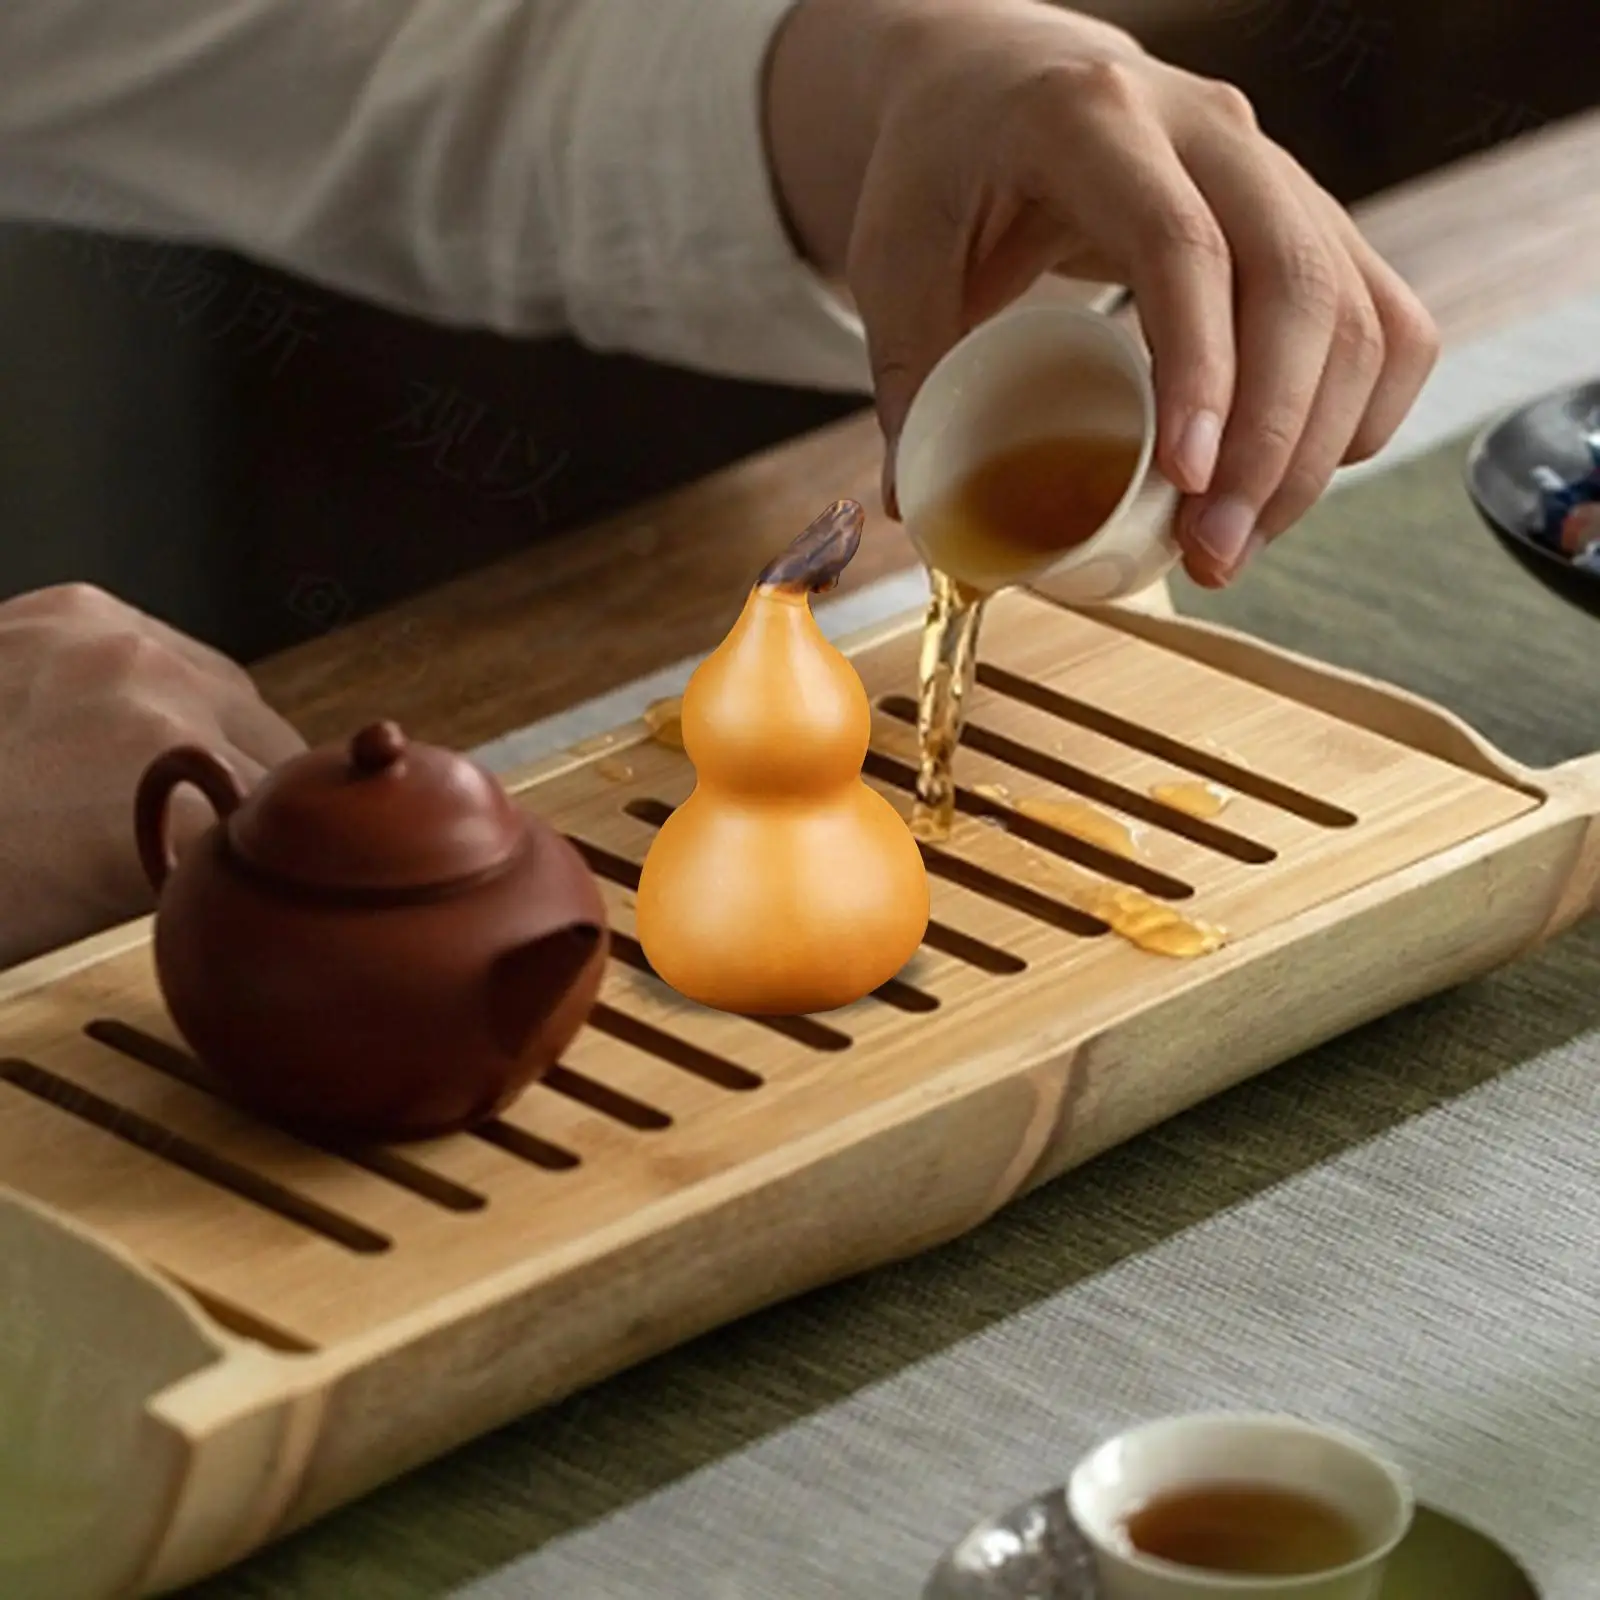 Tea Pet for Kungfu Figurine Chinese Style Miniature Gourd Statue Tea Figurine for Table Centerpiece Tea Room Desktop Office